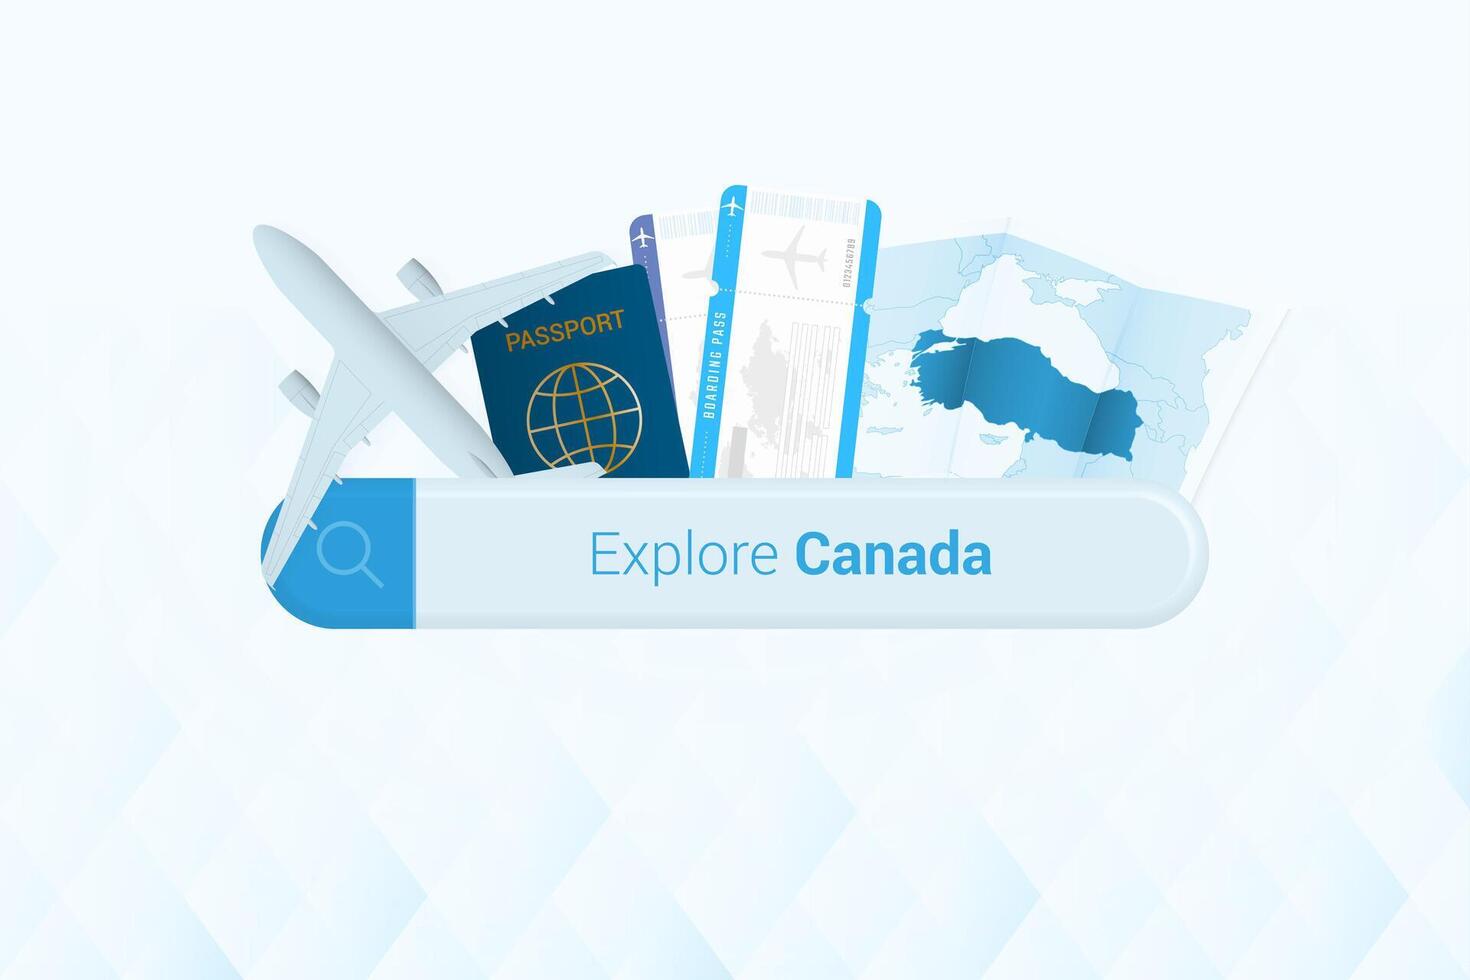 buscando Entradas a Canadá o viaje destino en Canadá. buscando bar con avión, pasaporte, embarque aprobar, Entradas y mapa. vector